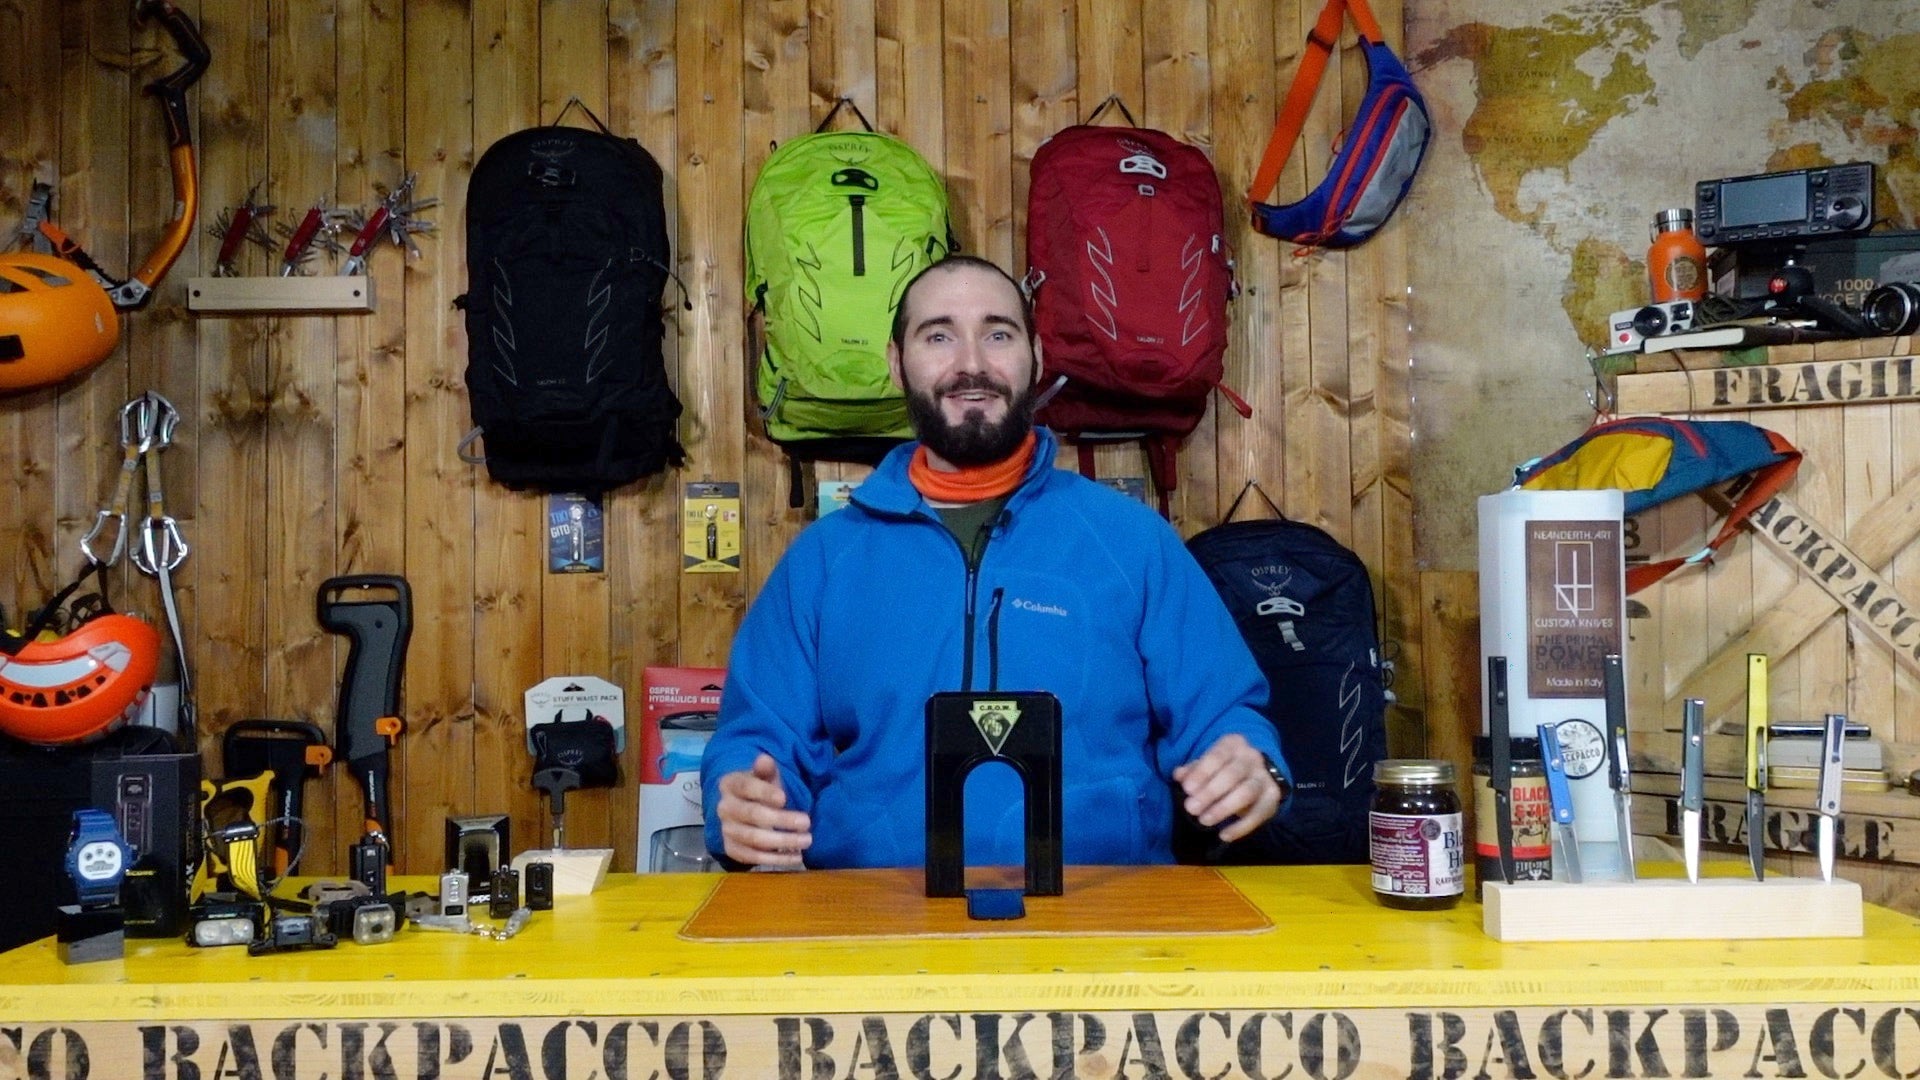 Paolo di Backpacco spiega la patch crow